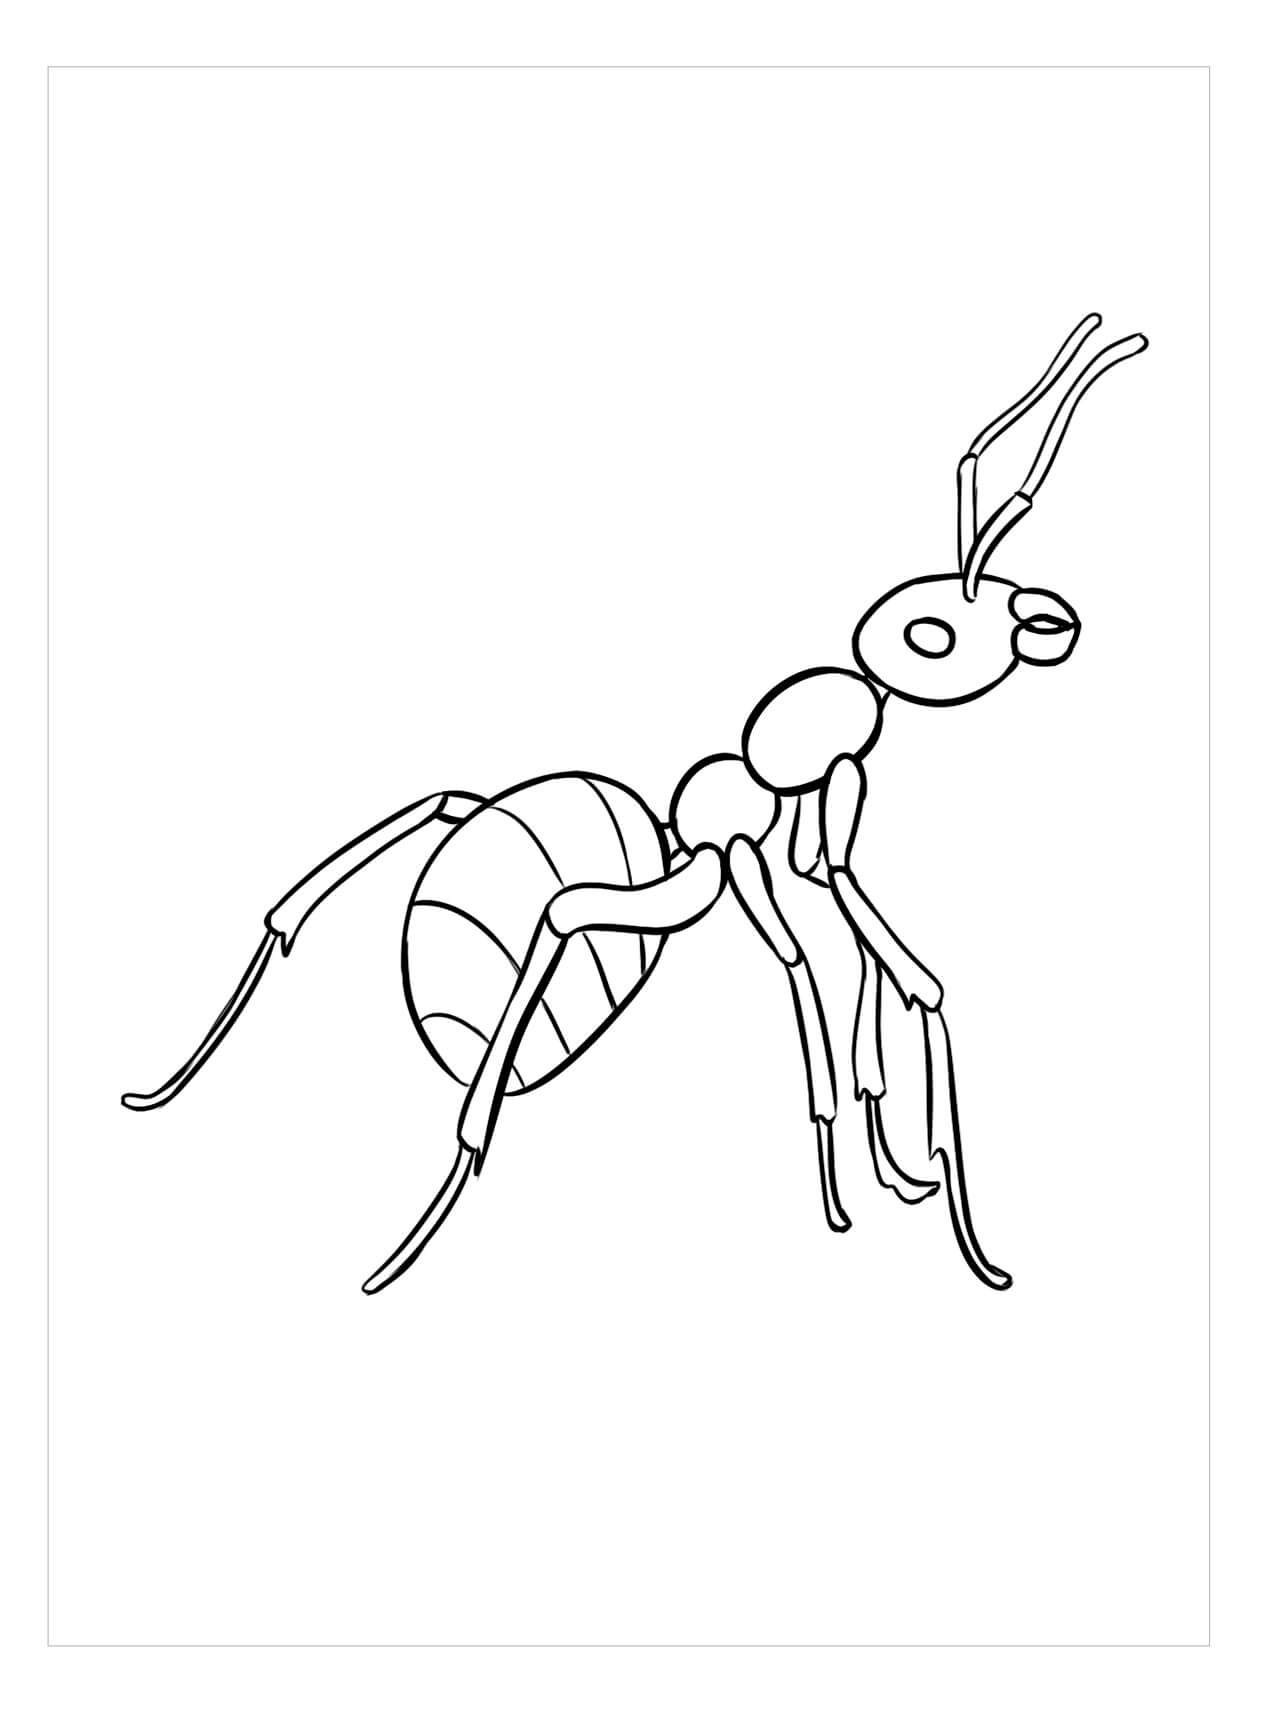 Imágenes gratis de Hormigas para colorir